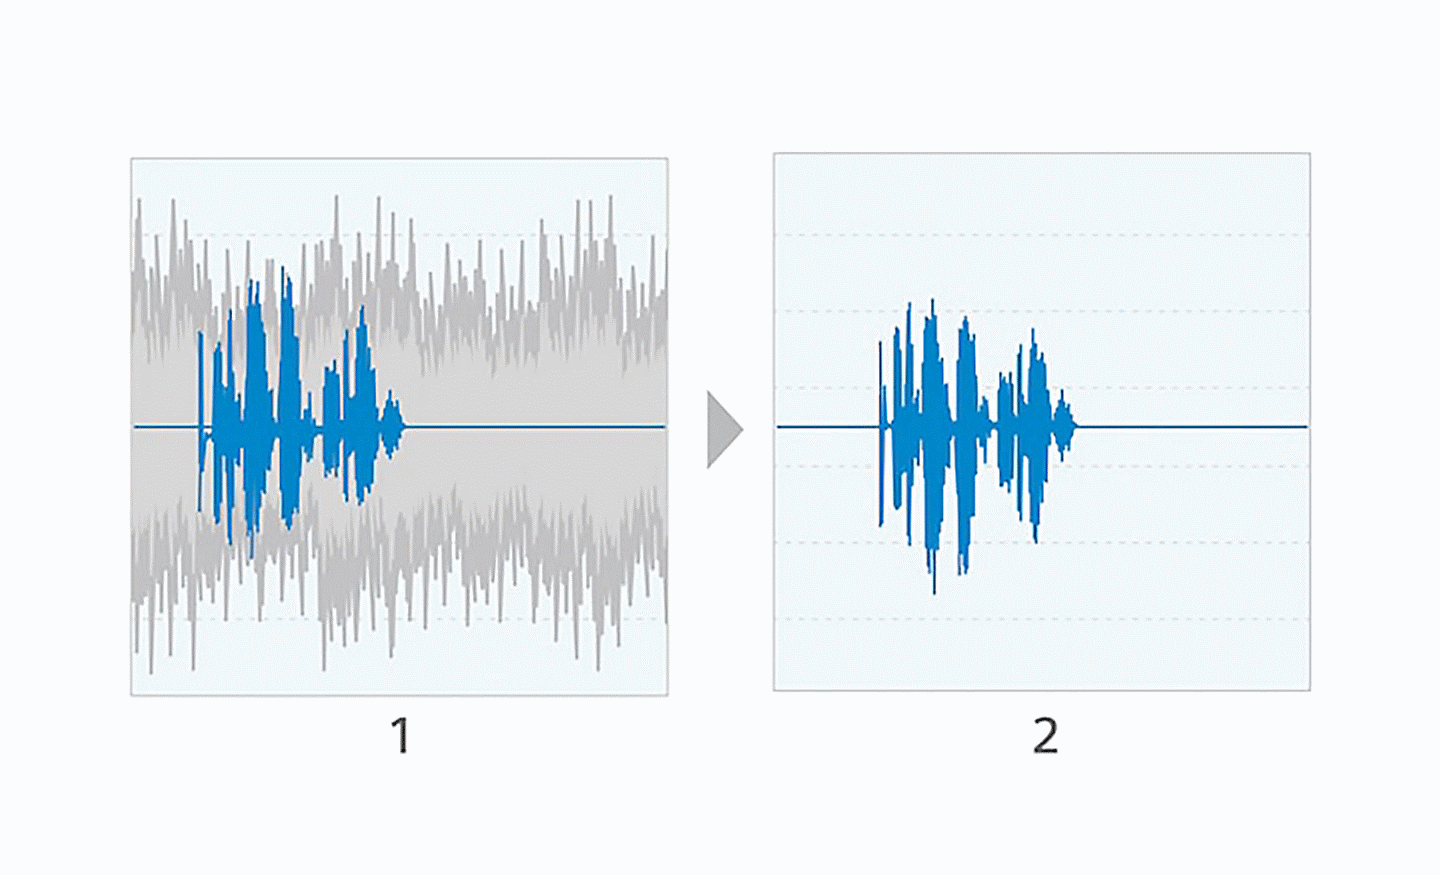 Εικόνα δύο διαγραμμάτων που απεικονίζουν ηχητικά κύματα το ένα δίπλα στο άλλο, στο αριστερό βλέπουμε μπλε και γκρι γραμμές και στο δεξί μόνο μπλε γραμμές